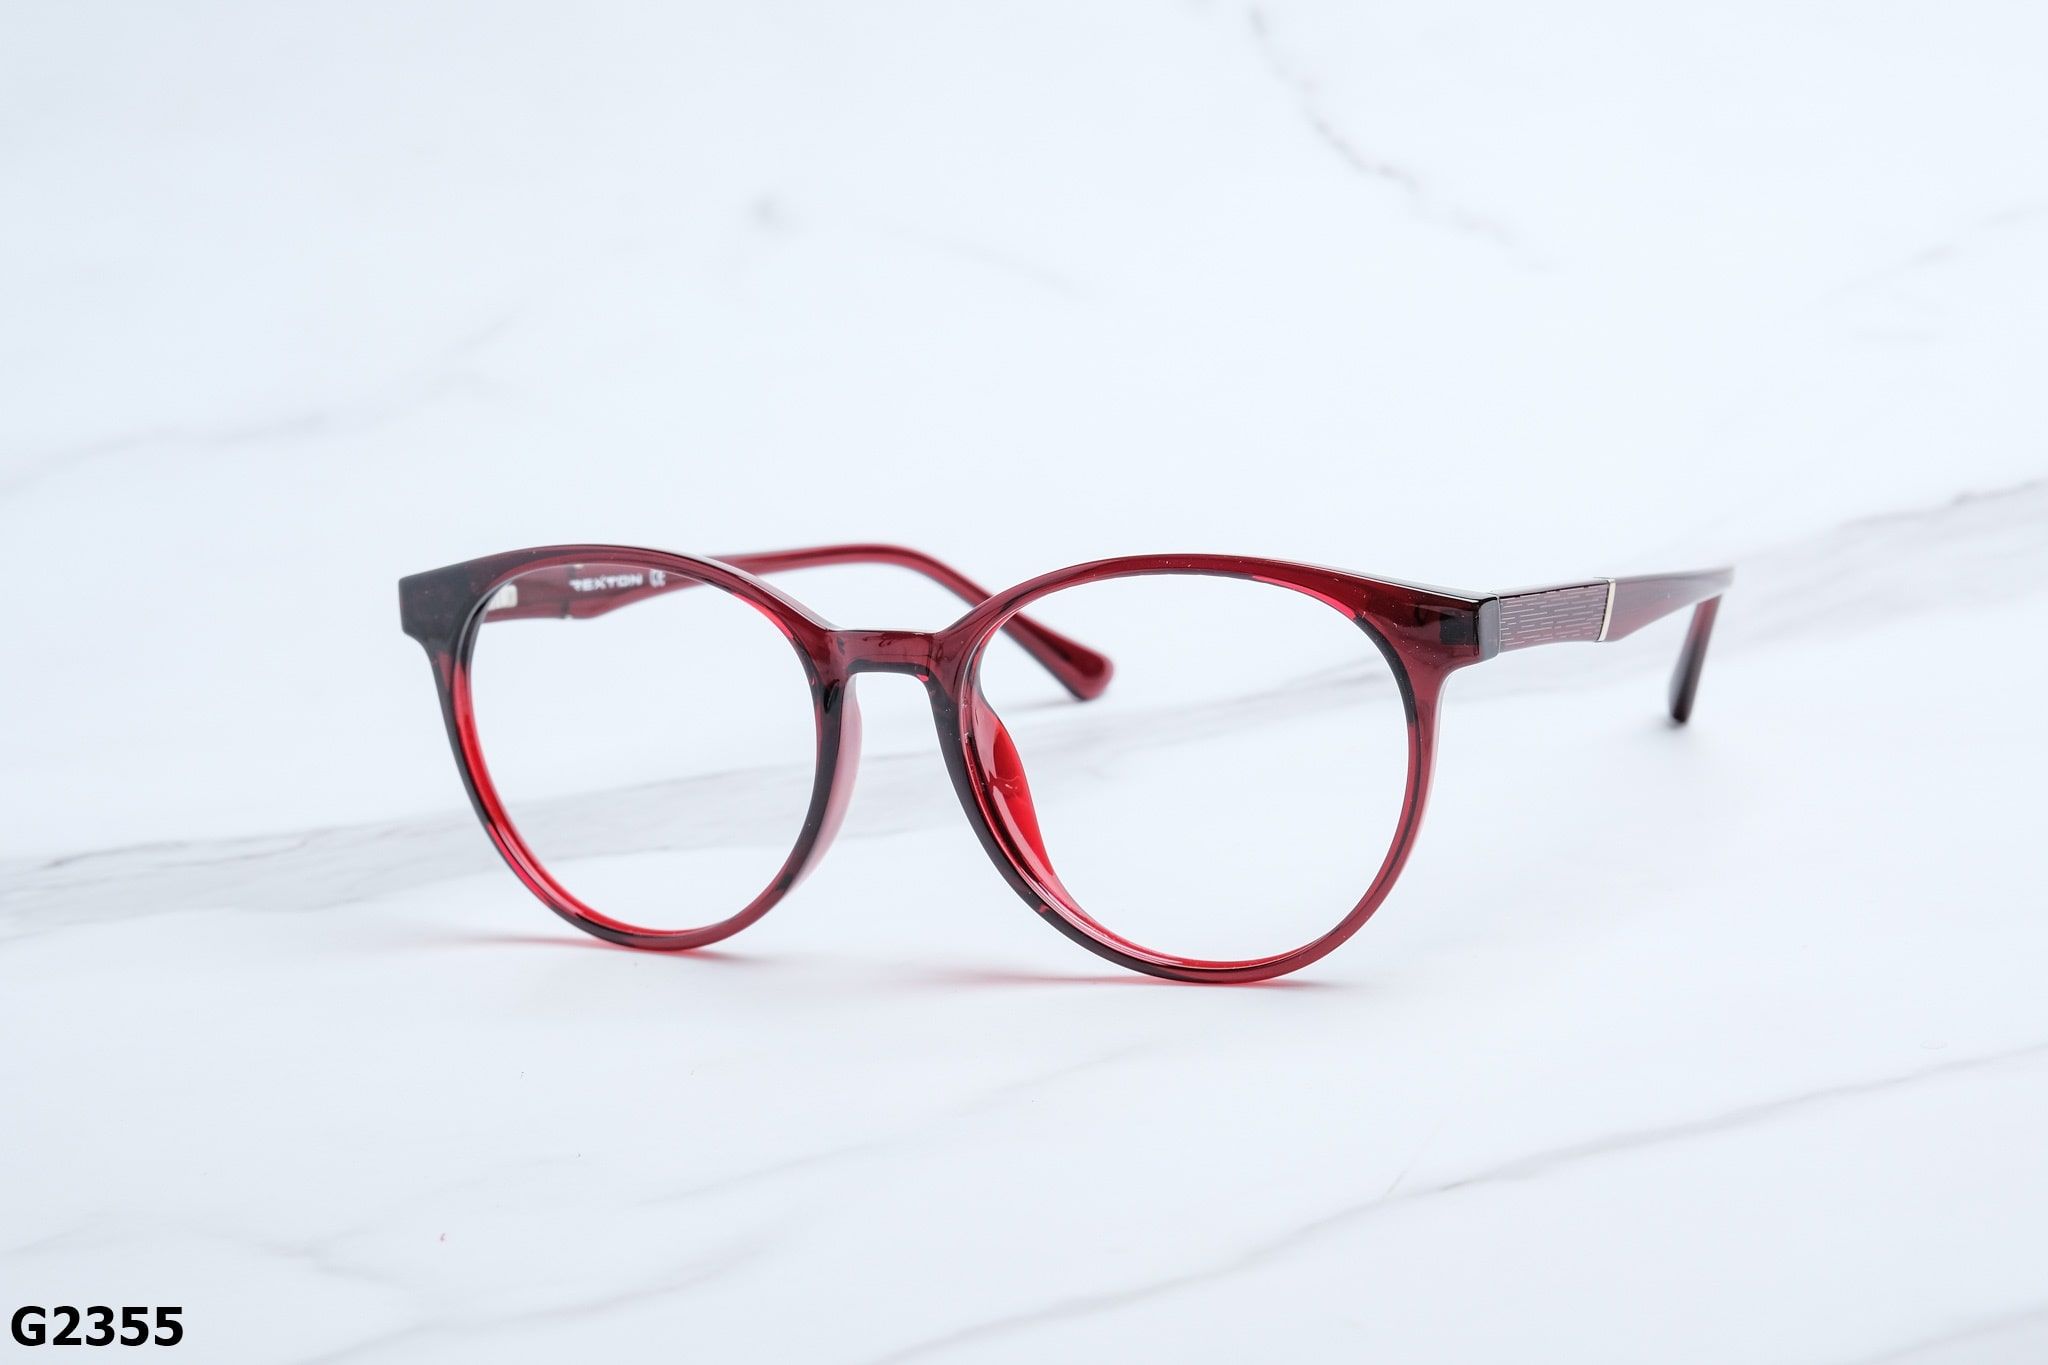  Rex-ton Eyewear - Glasses - G2355 